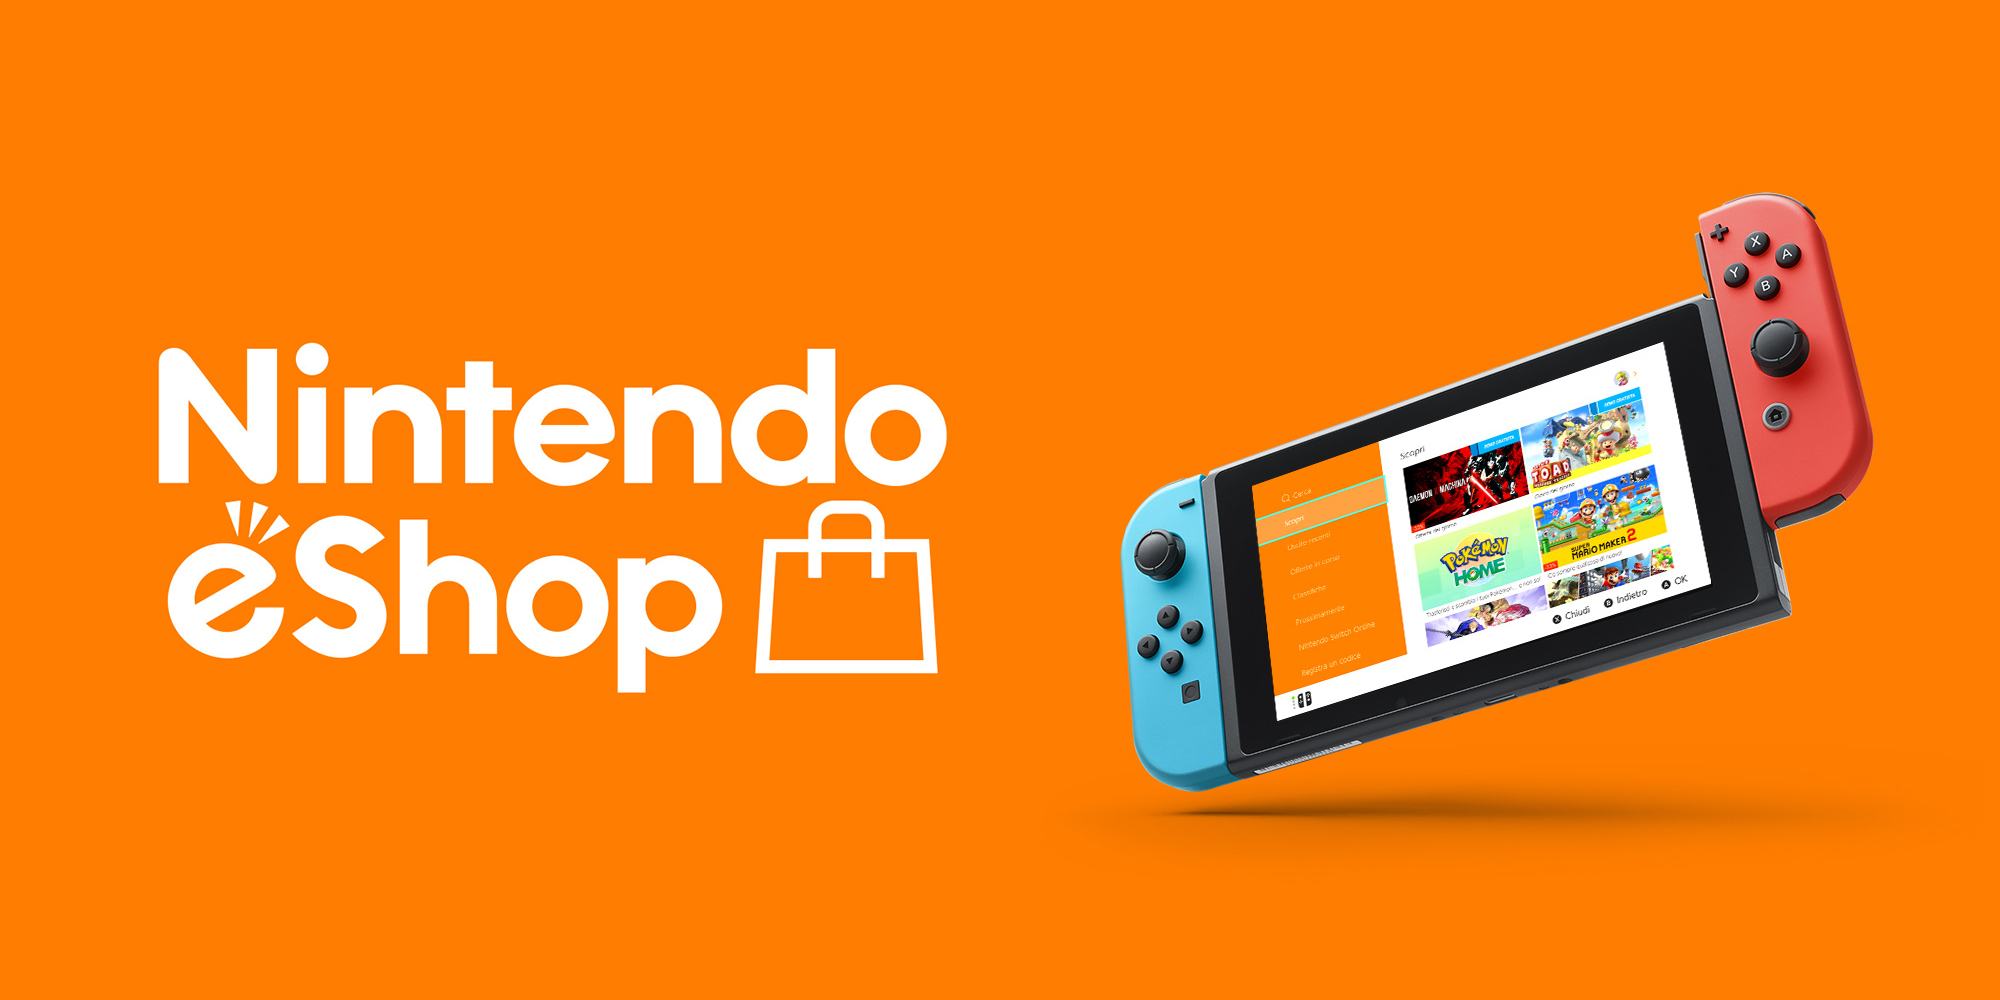 Nintendo eShop: tre bei giochi per Switch in offerta a soli 1,49 euro